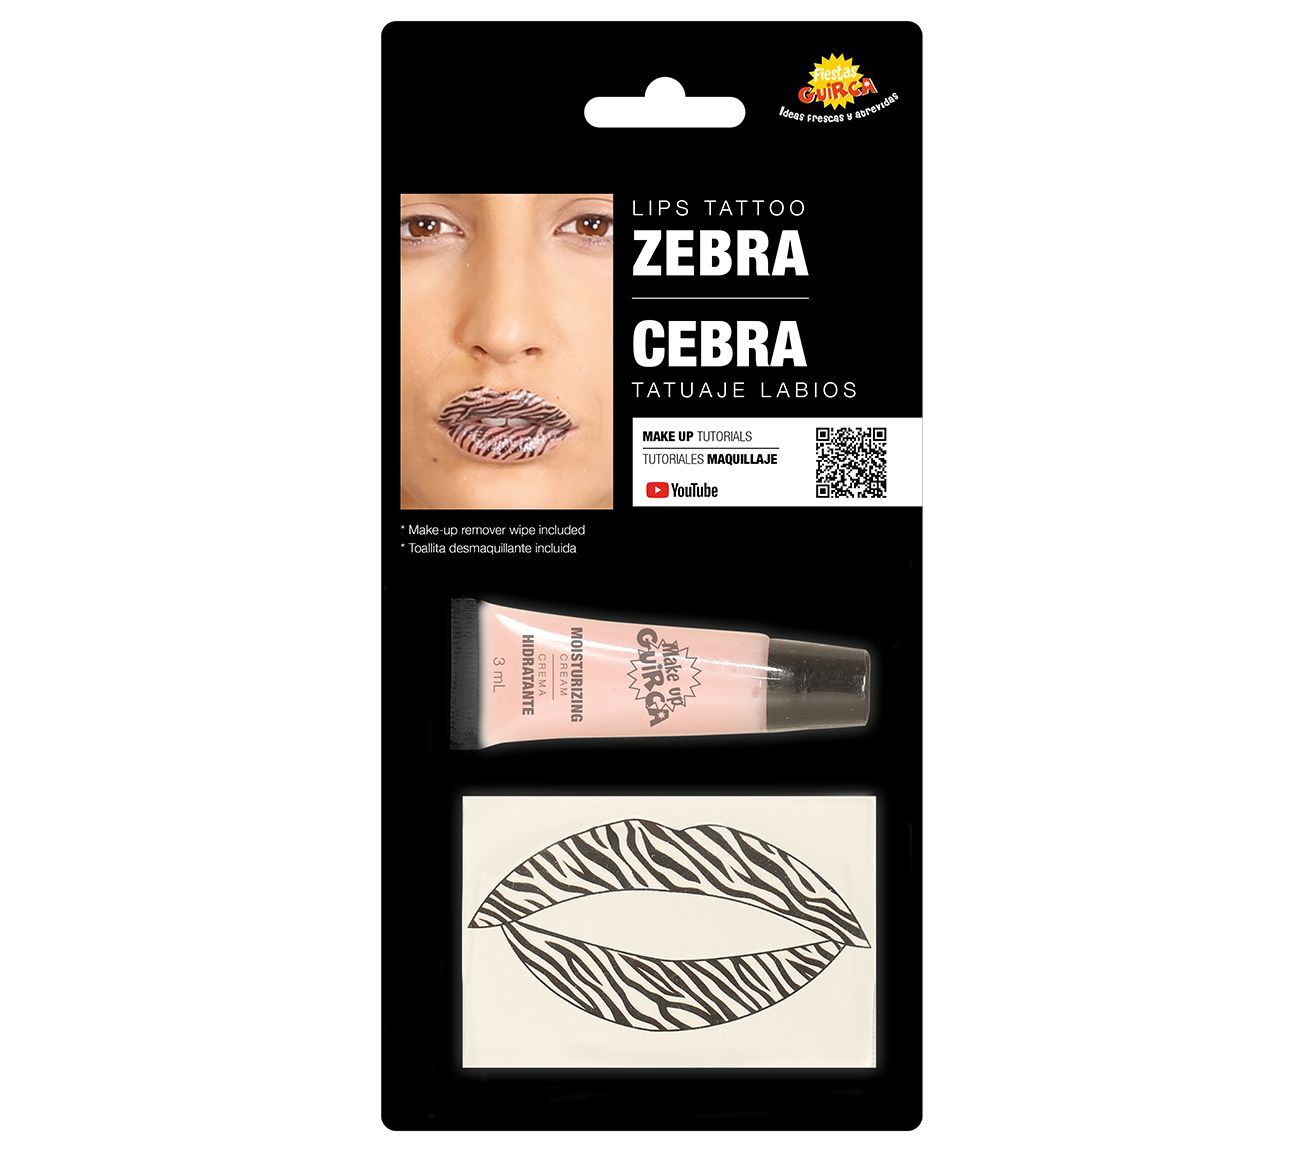 Lip tattoo zebraprint